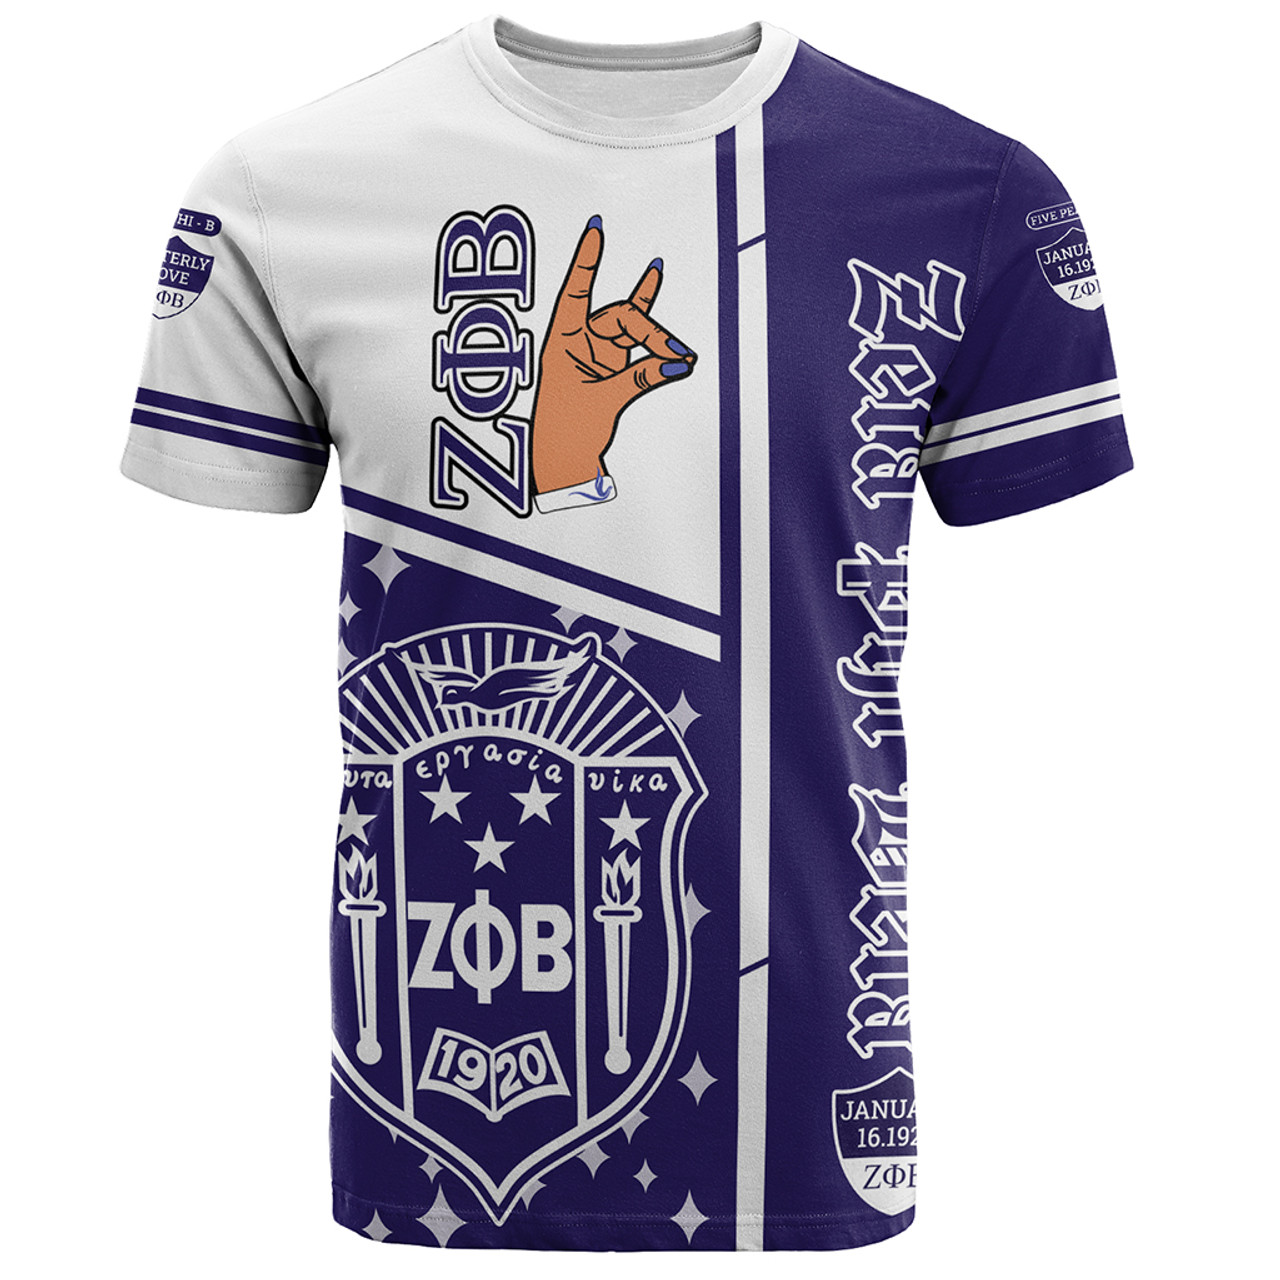 Zeta Phi Beta T-Shirt Hand Sign